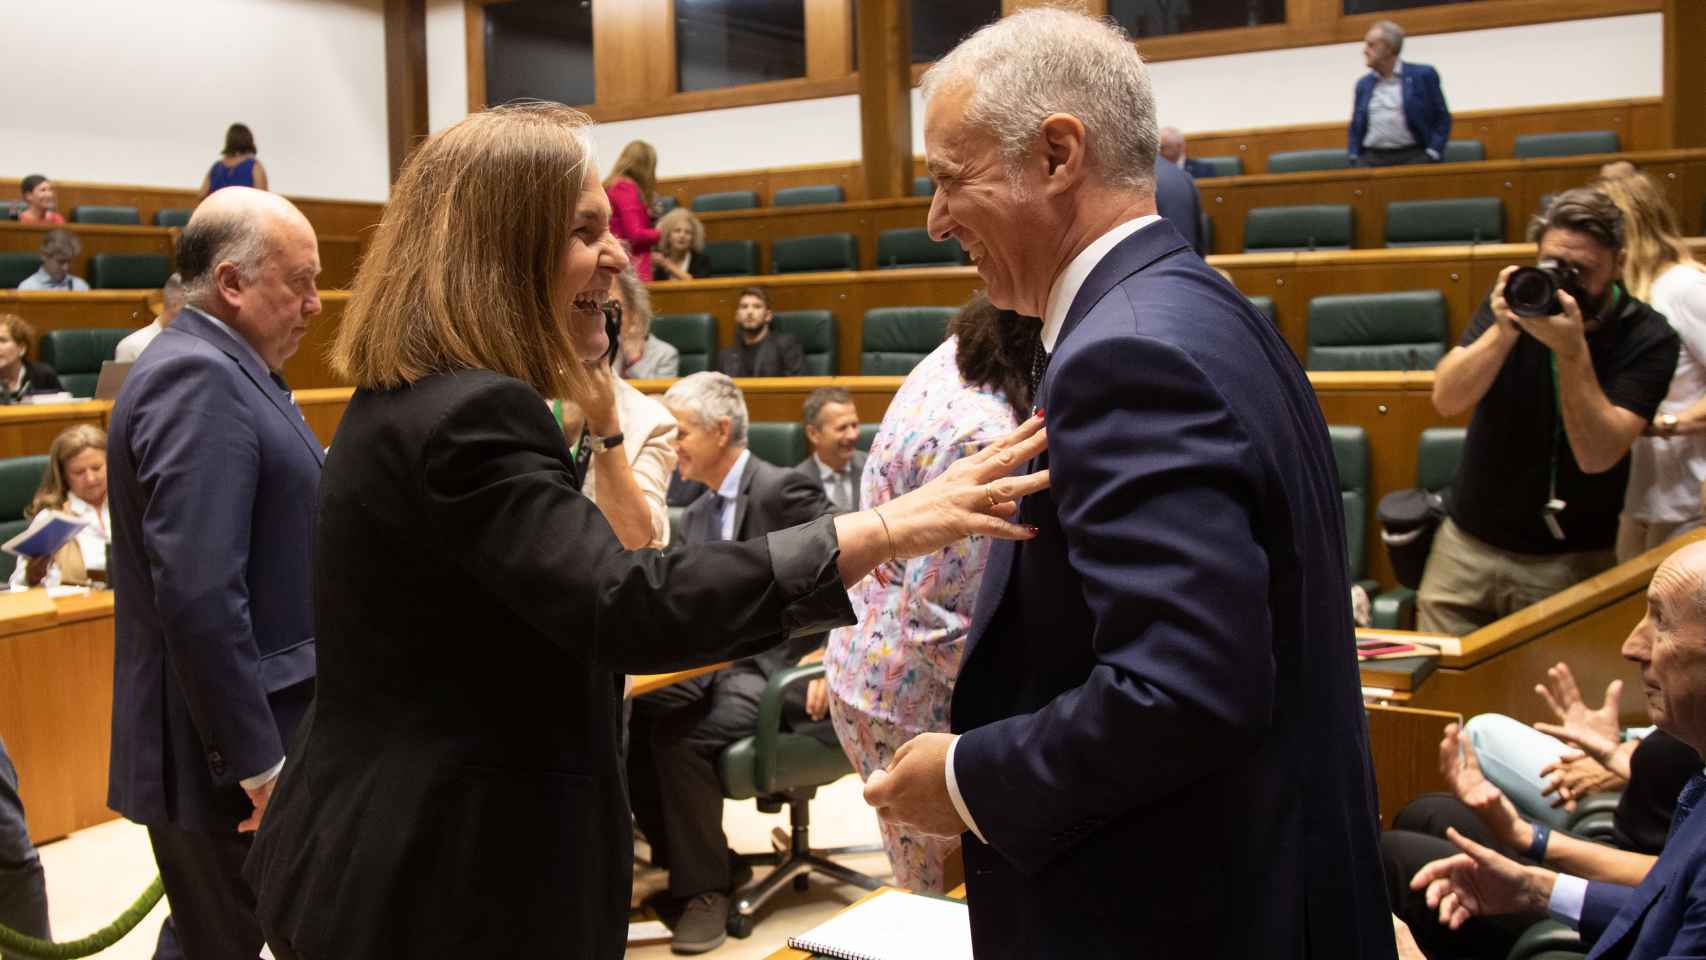 El lehendakari, Iñigo Urkullu, saluda a la portavoz de EH-Bildu en el Parlamento vasco, Nerea Kortajarena / Legebiltzarra